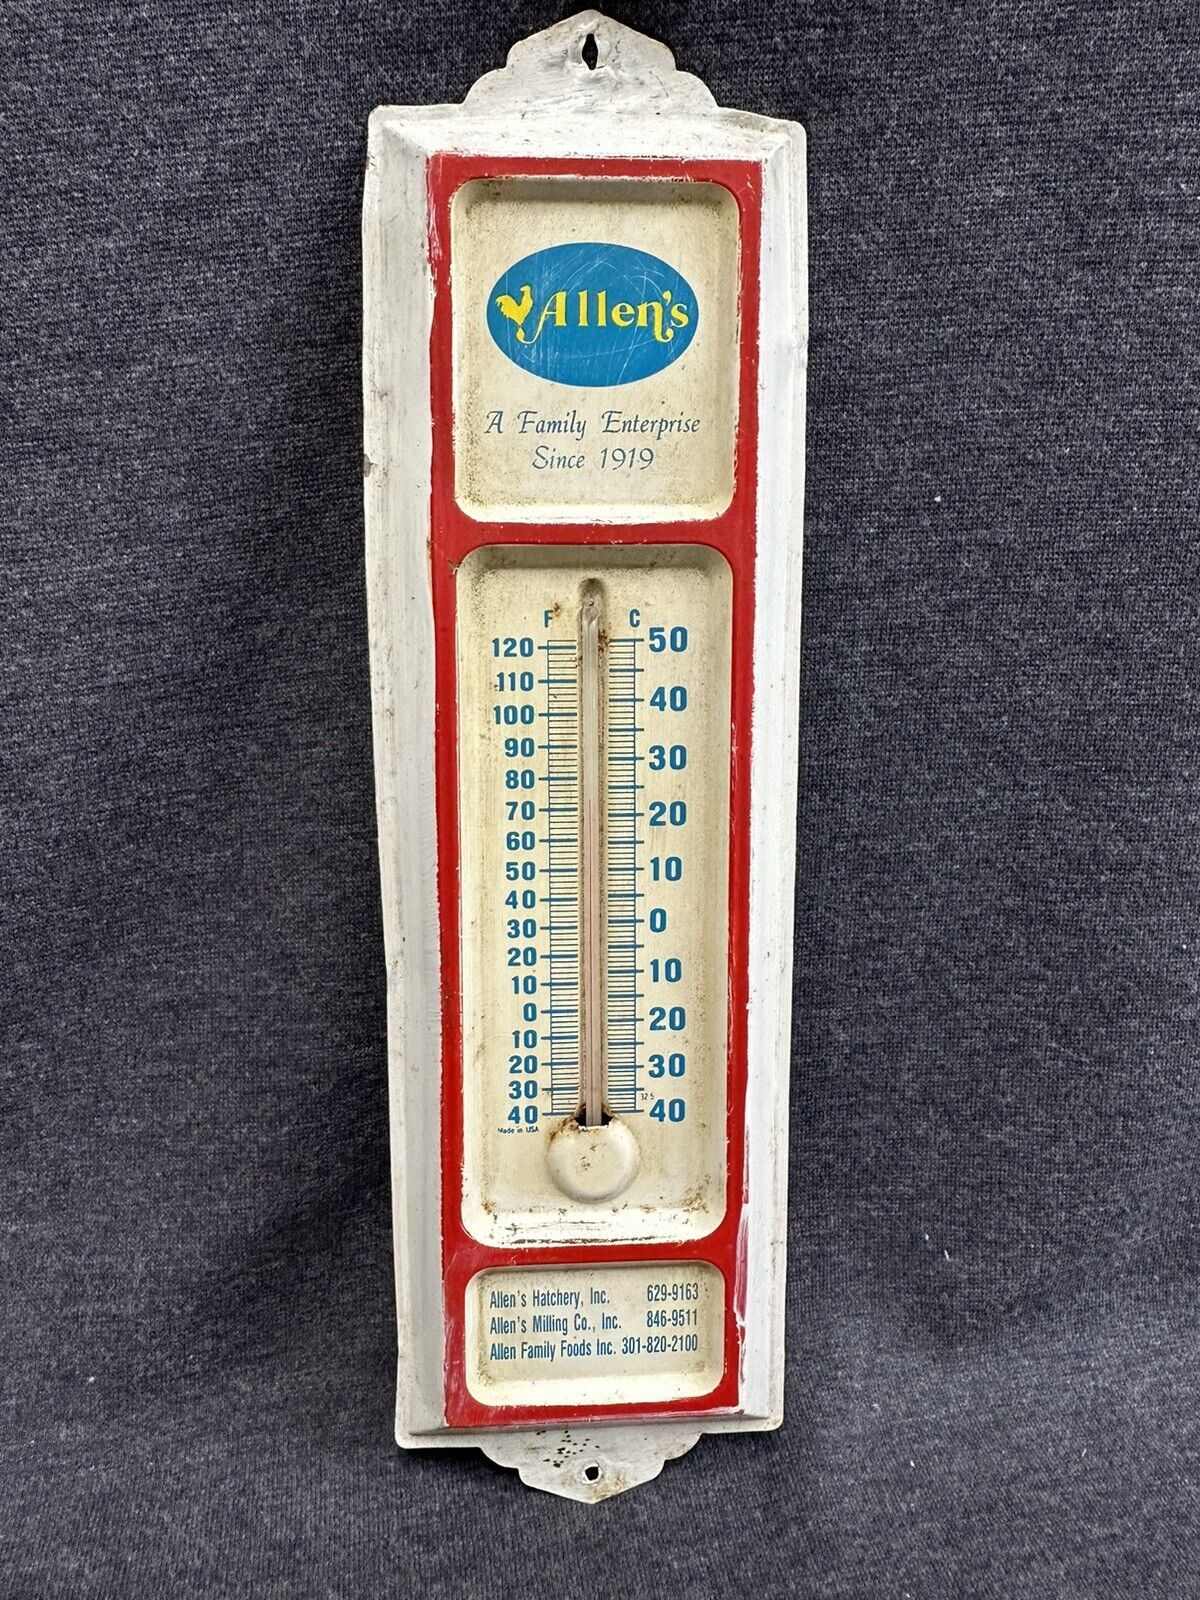 Vtg Advertising Thermometer - Allen’s Family Enterprise Since 1919 Pennsylvania